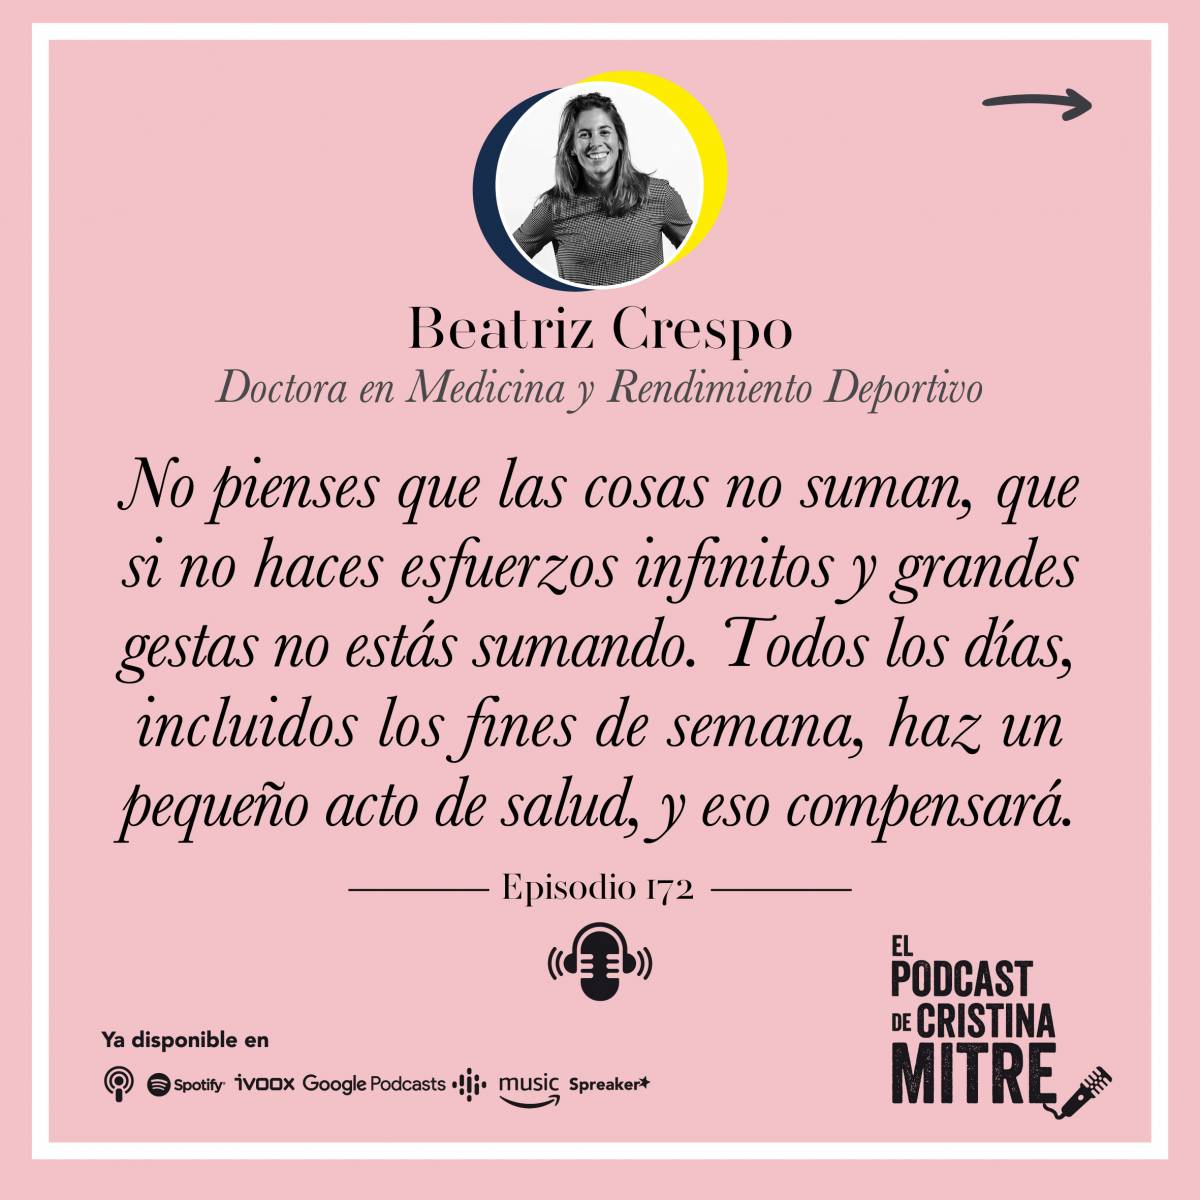 Podcast de Cristina Mitre Beatriz Crespo Hábitos saludables 